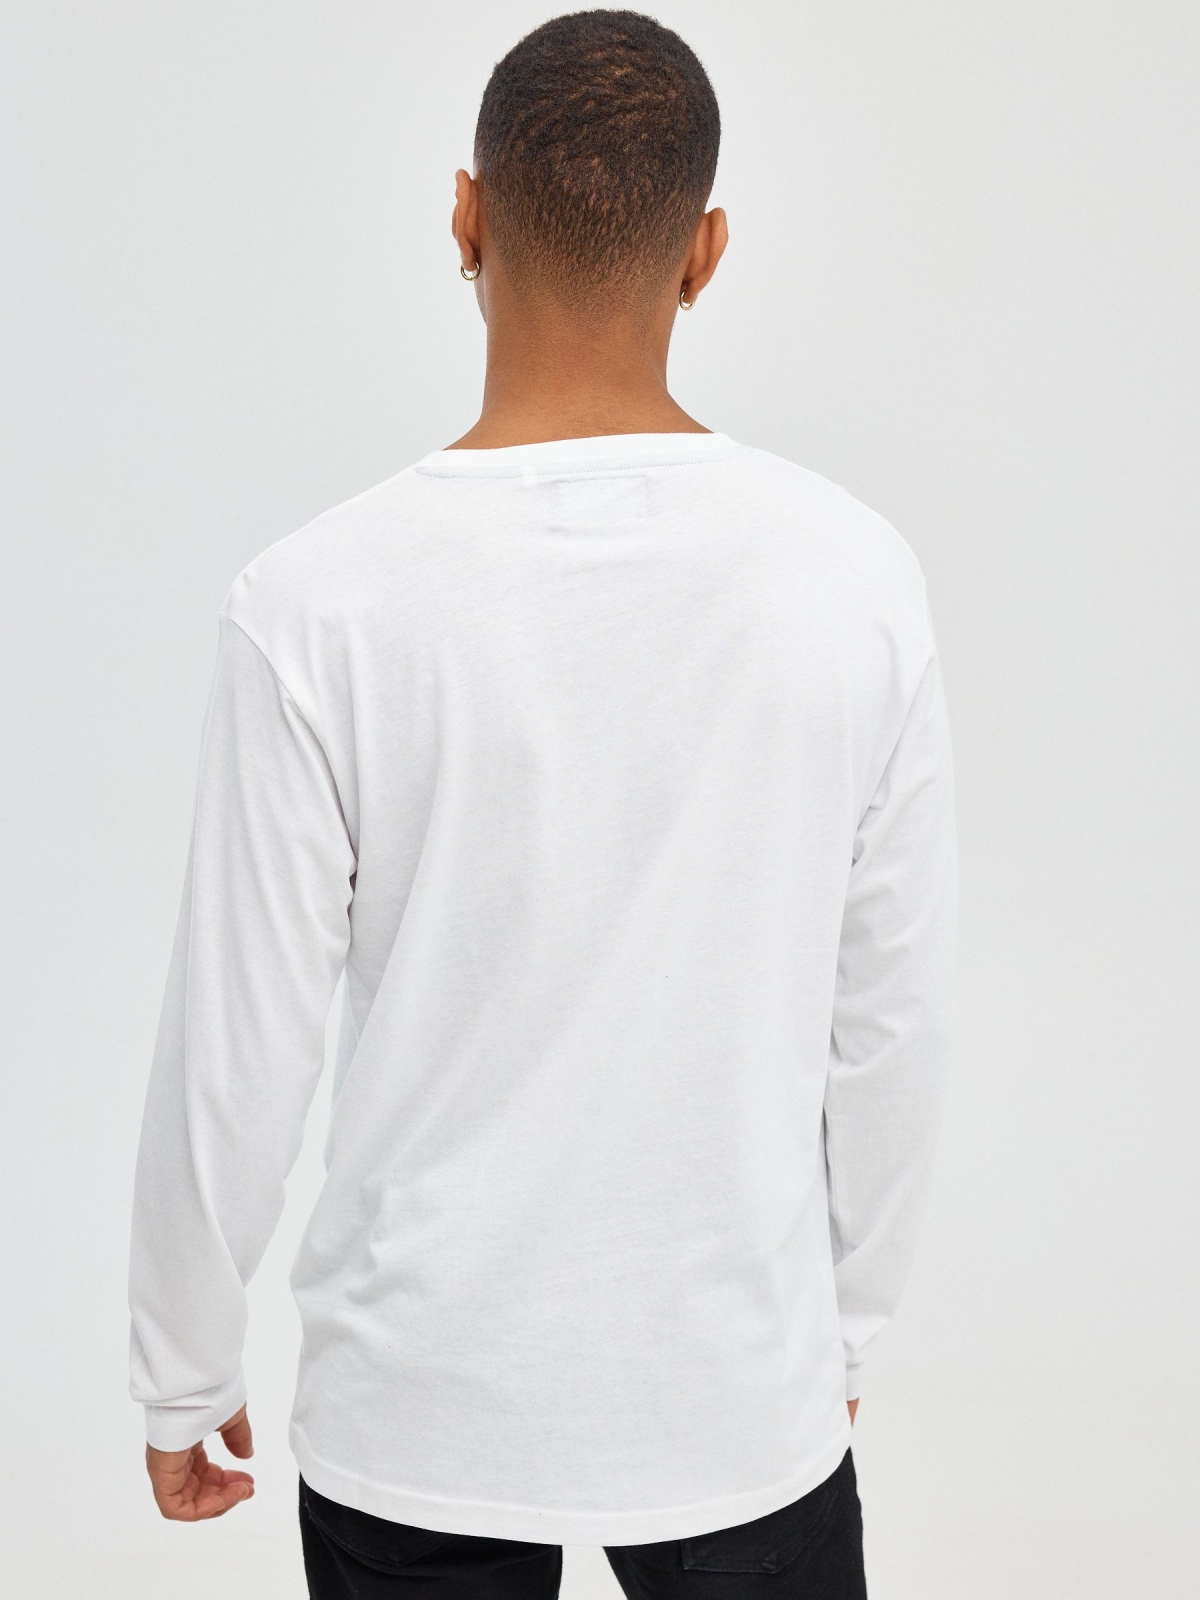 Camiseta regular INSIDE blanco vista media trasera